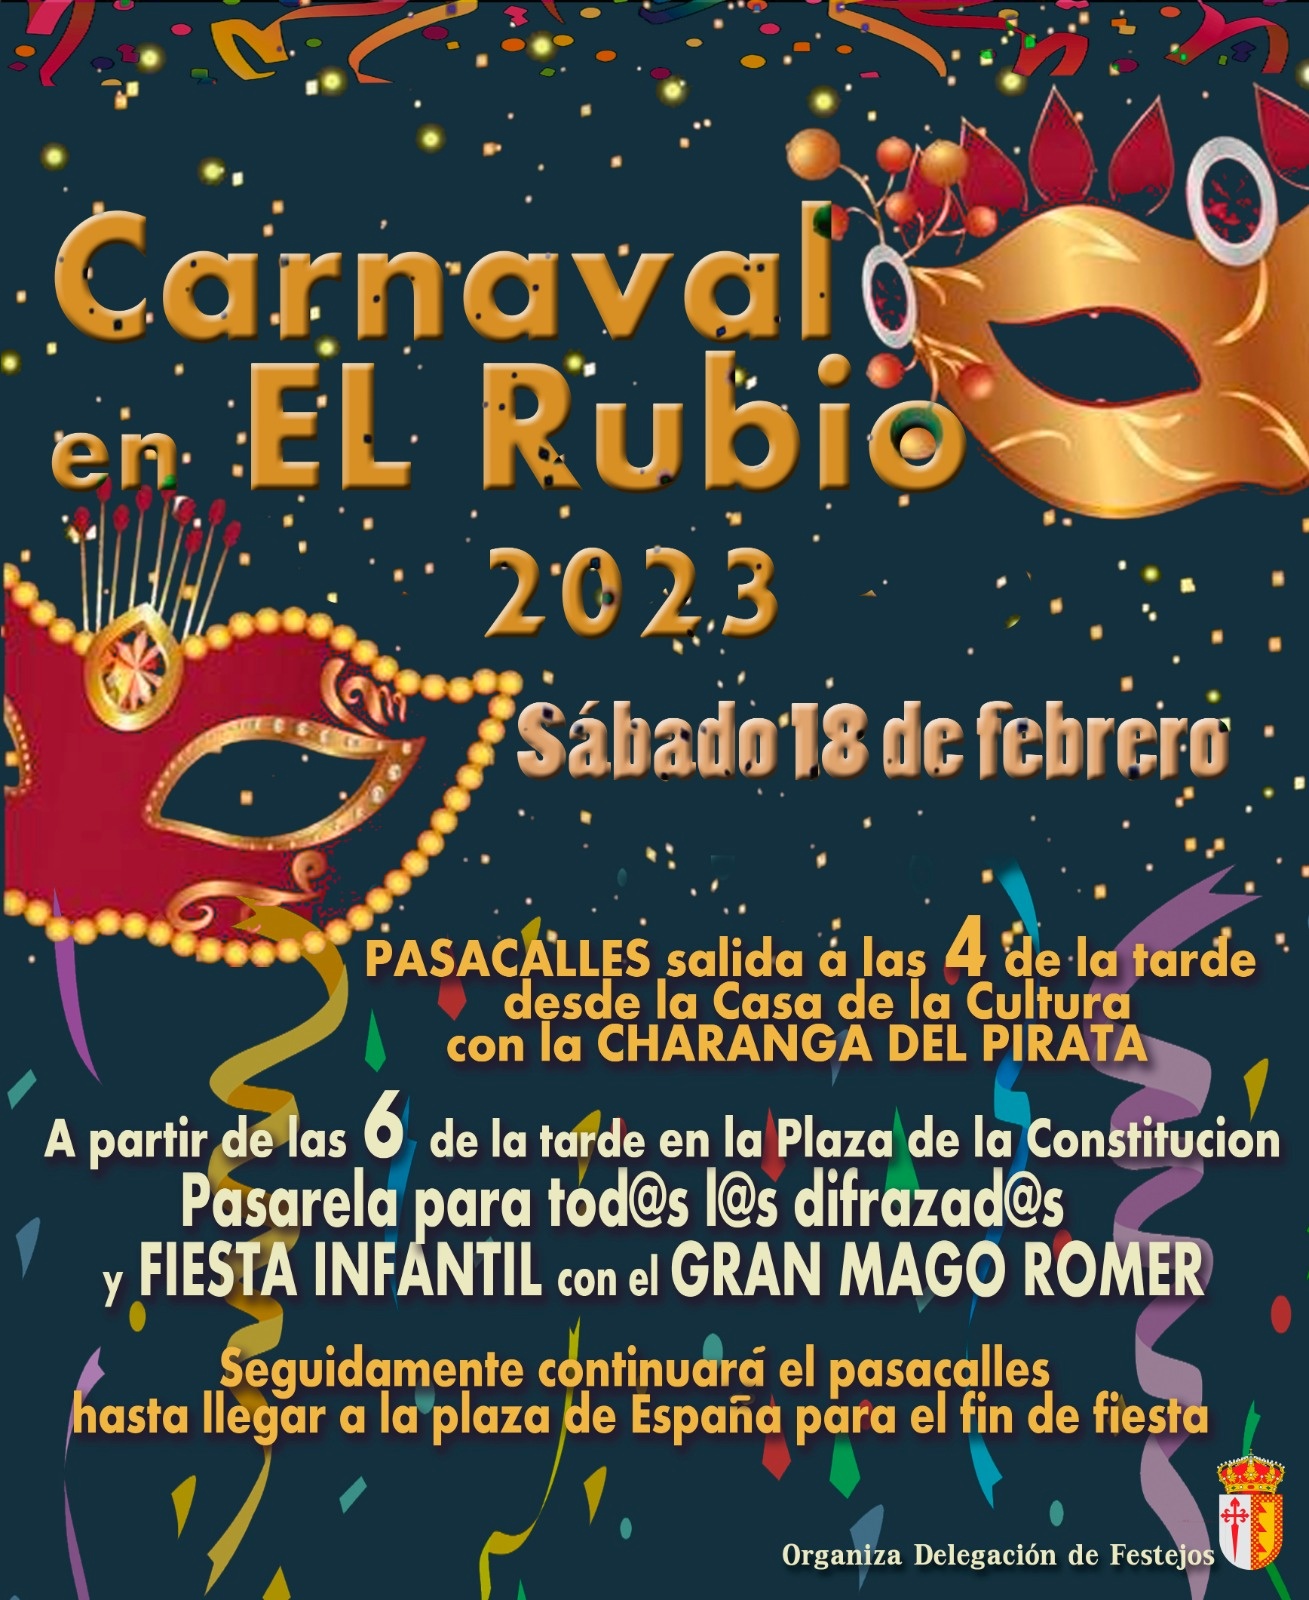 1.-CARNAVAL EL RUBIO 2023